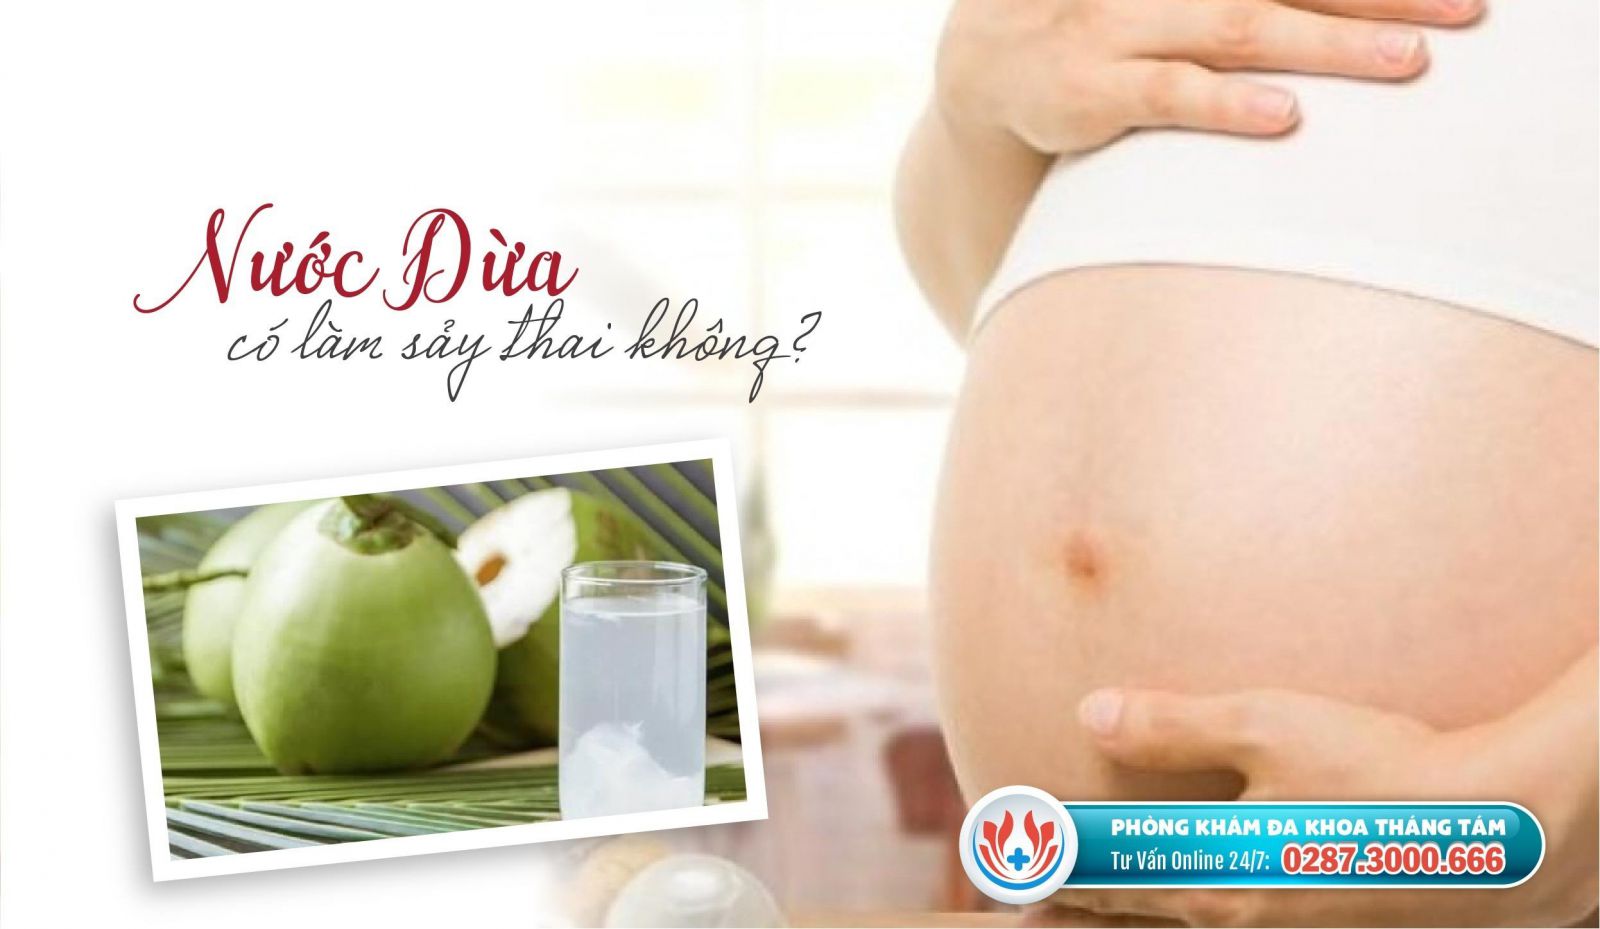 thai nhi dưới 7 tuần tuổi uống nước dừa có sảy thai không